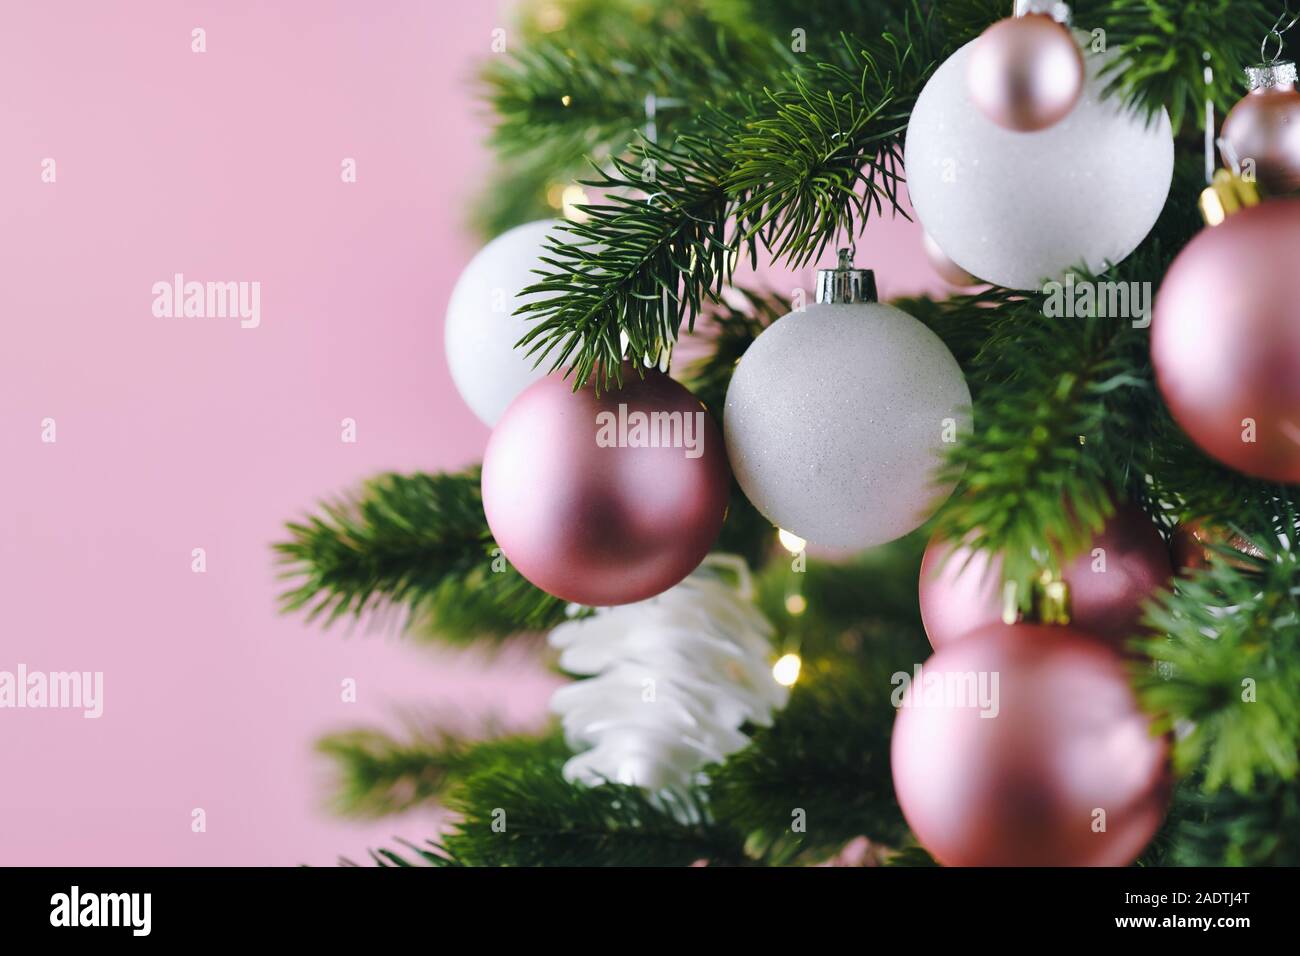 Nahaufnahme von geschmückten Weihnachtsbaum mit weißen und rosa Saison baumschmuck wie Kugeln und Sterne auf rosa Hintergrund mit Licht im Hintergrund Stockfoto